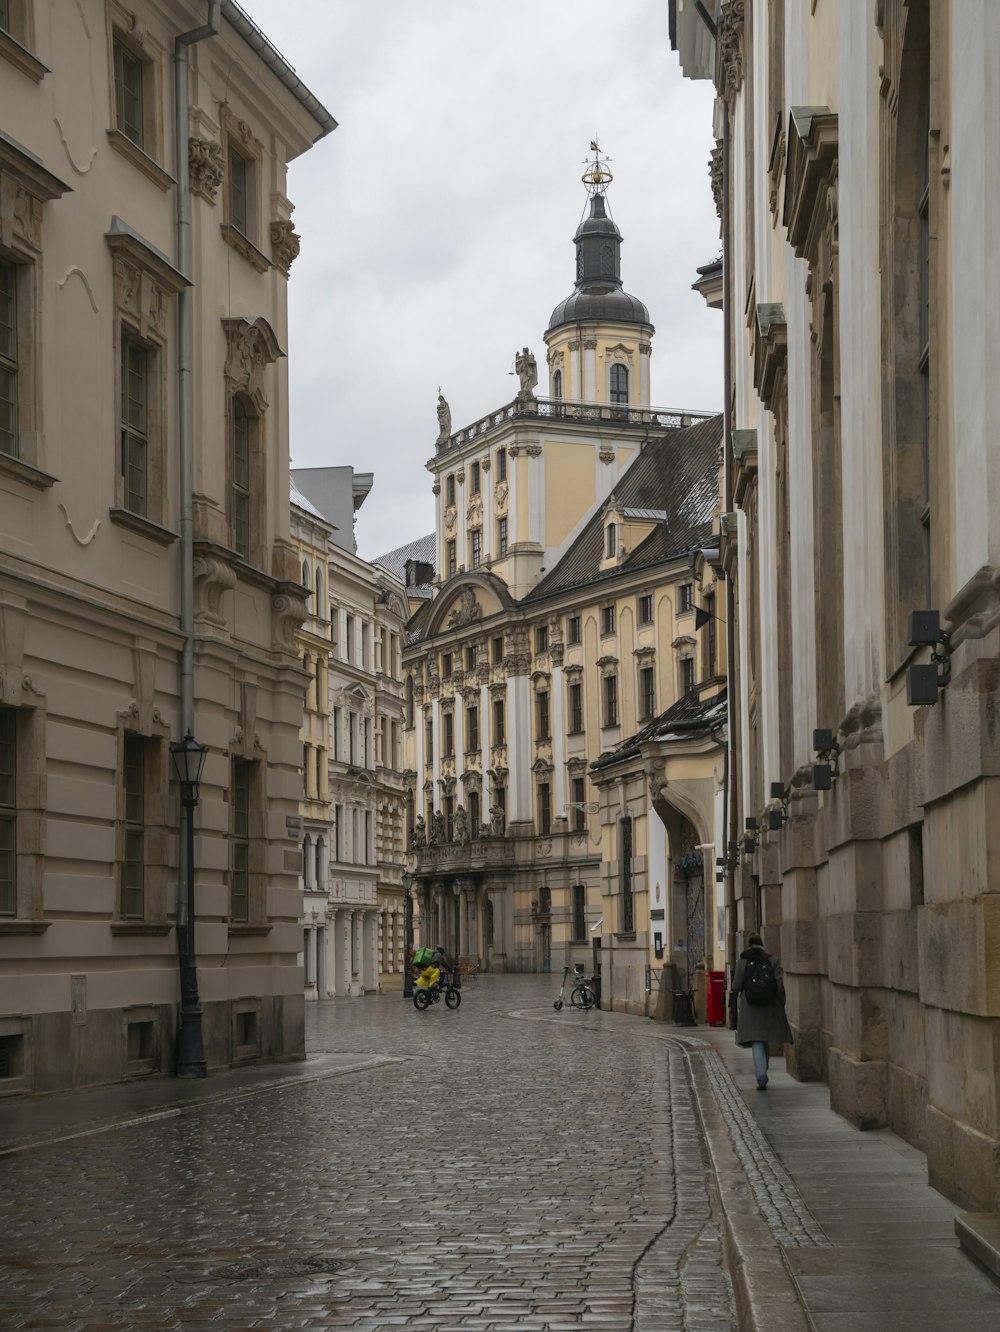 Uma rua de paralelepípedos em uma cidade europeia